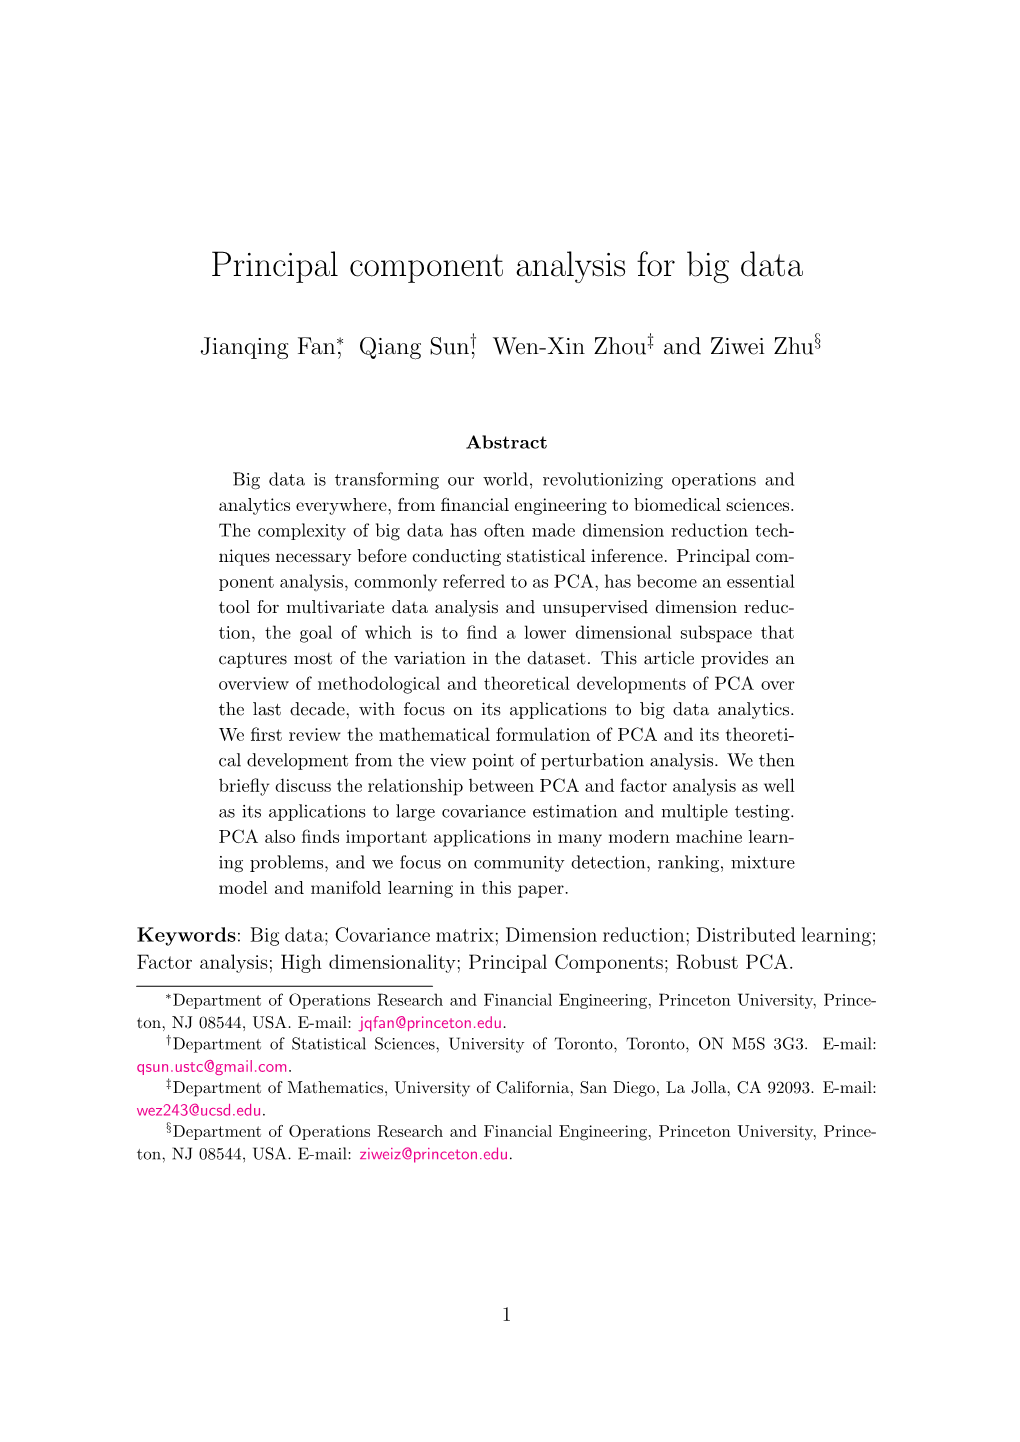 Principal Component Analysis for Big Data